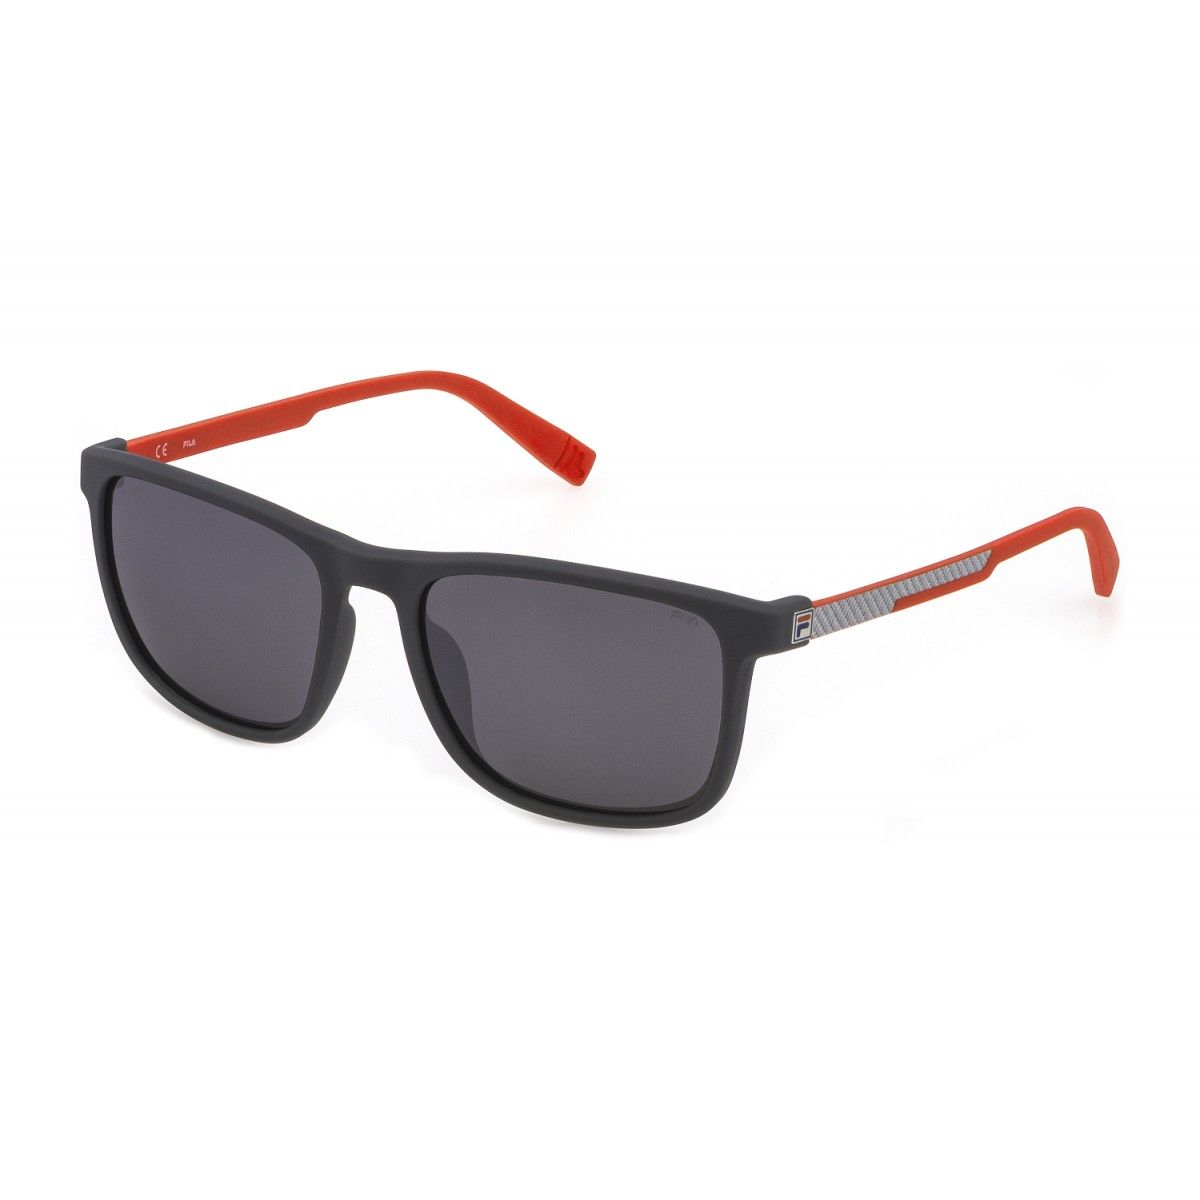 Купить очки маркет. Очки Fila sfi019. Gg 1178/s g2p очки. Очки солнцезащитные Fila розовые. Очки Фила солнцезащитные мужские.